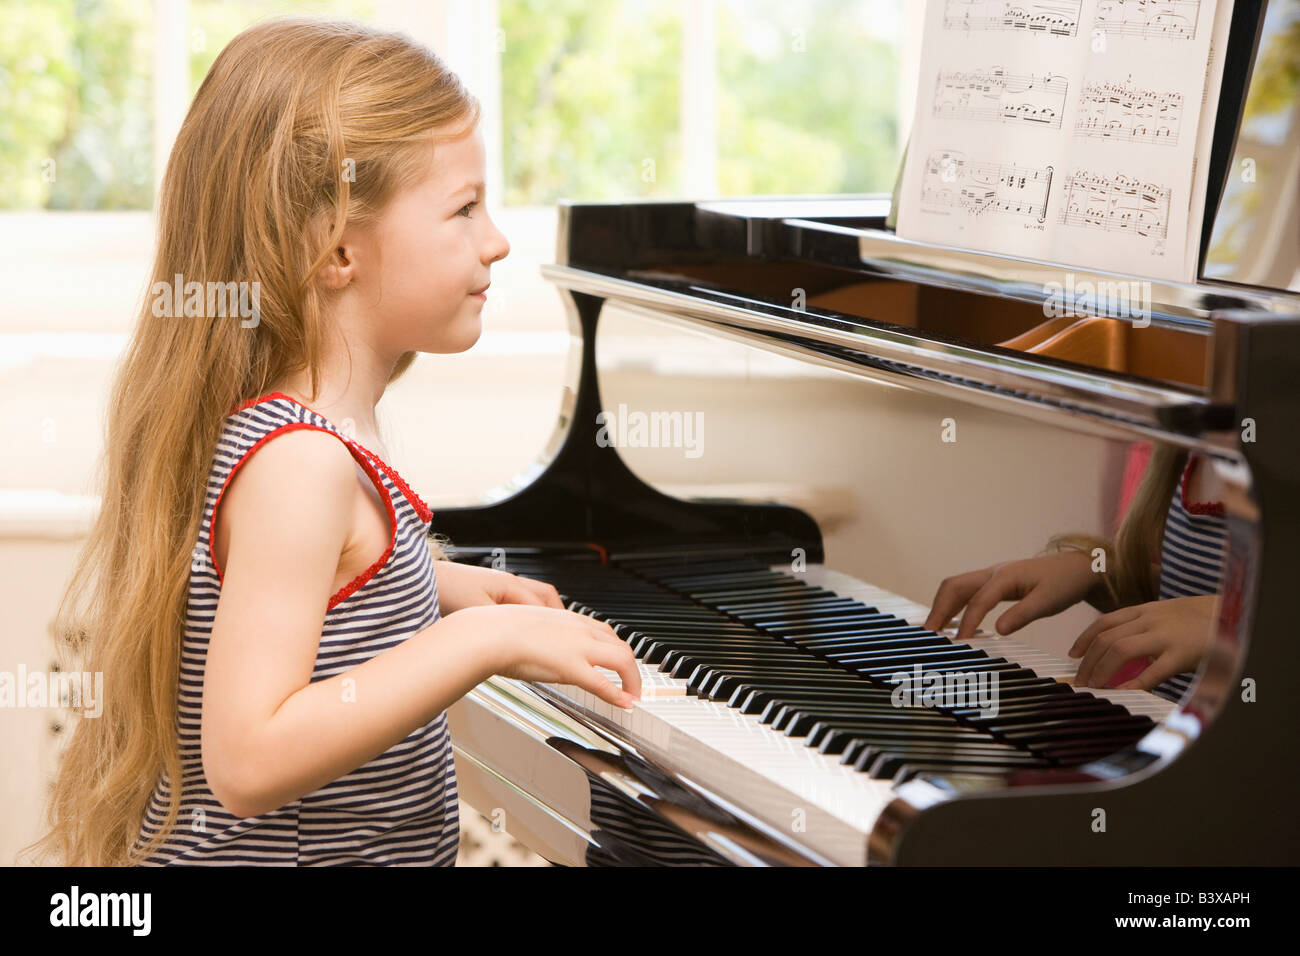 Ragazza Che Suona Il Pianoforte Immagini e Fotos Stock - Alamy